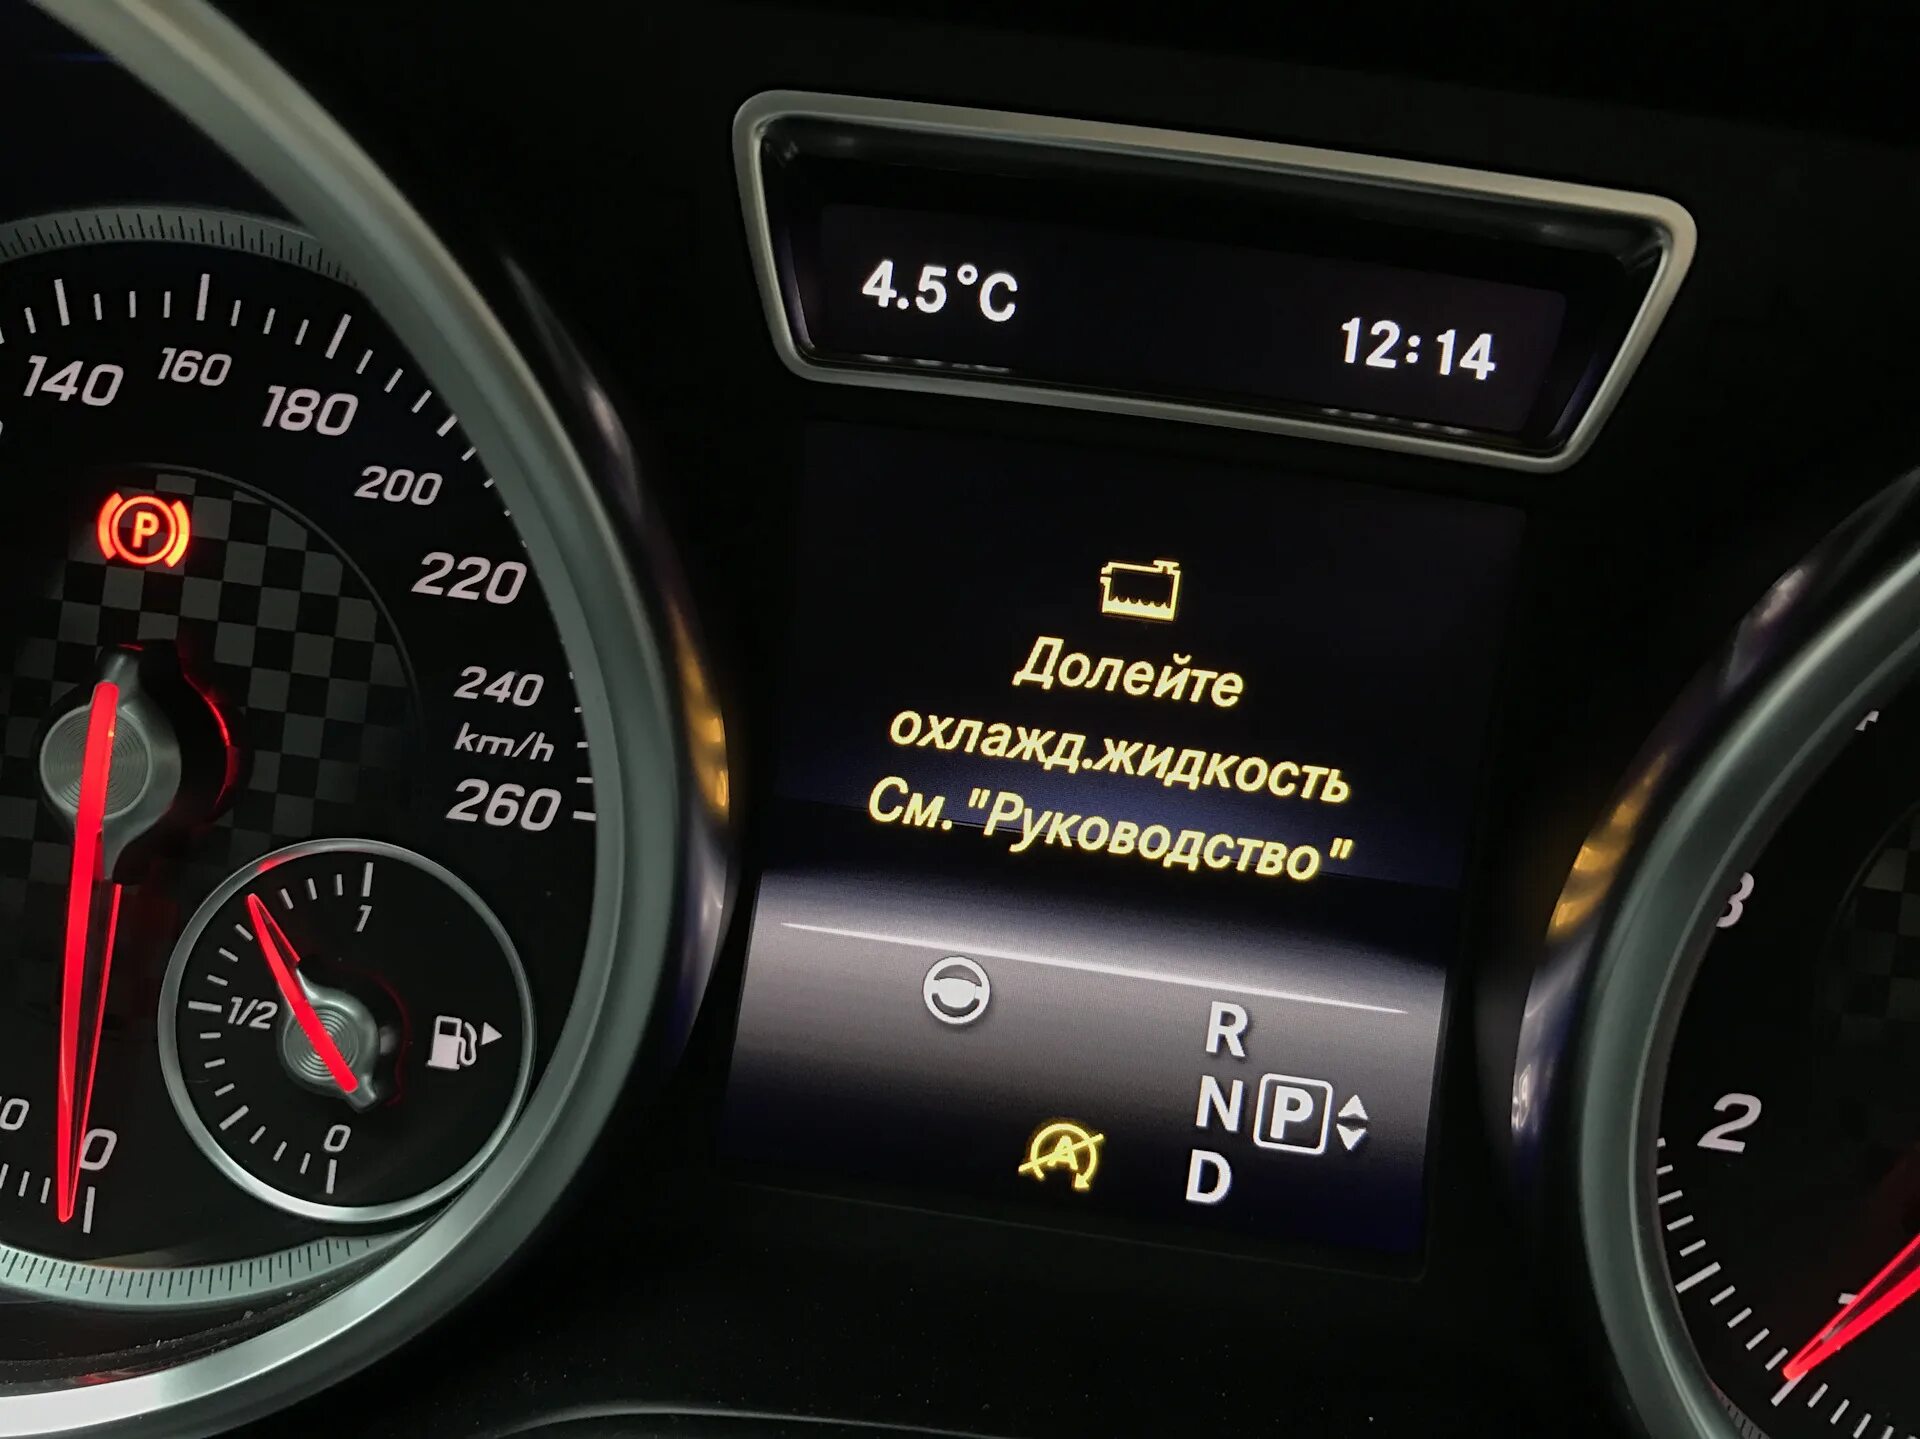 Mercedes-Benz c 200 охлаждающая жидкость. Mercedes Benz gl 350 2016 долейте охлаждающую жидкость. Индикатор уровня охлаждающей жидкости w222. Долейте охлаждающую жидкость Мерседес w204. Ошибка температура масла